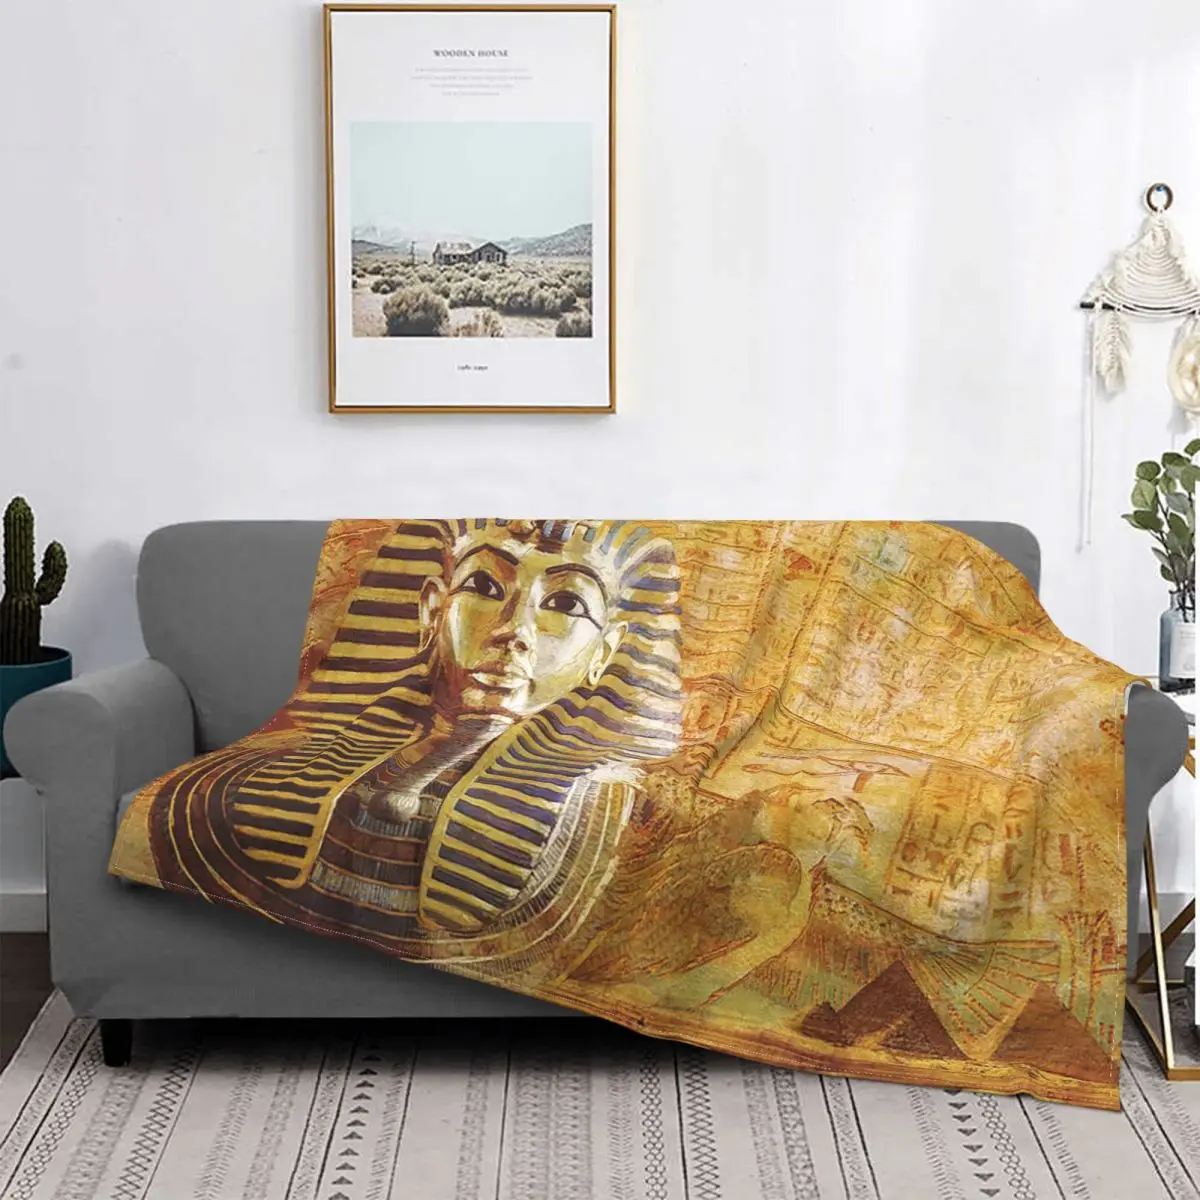 

Фланелевое супермягкое одеяло с принтом древней египетской цивилизации